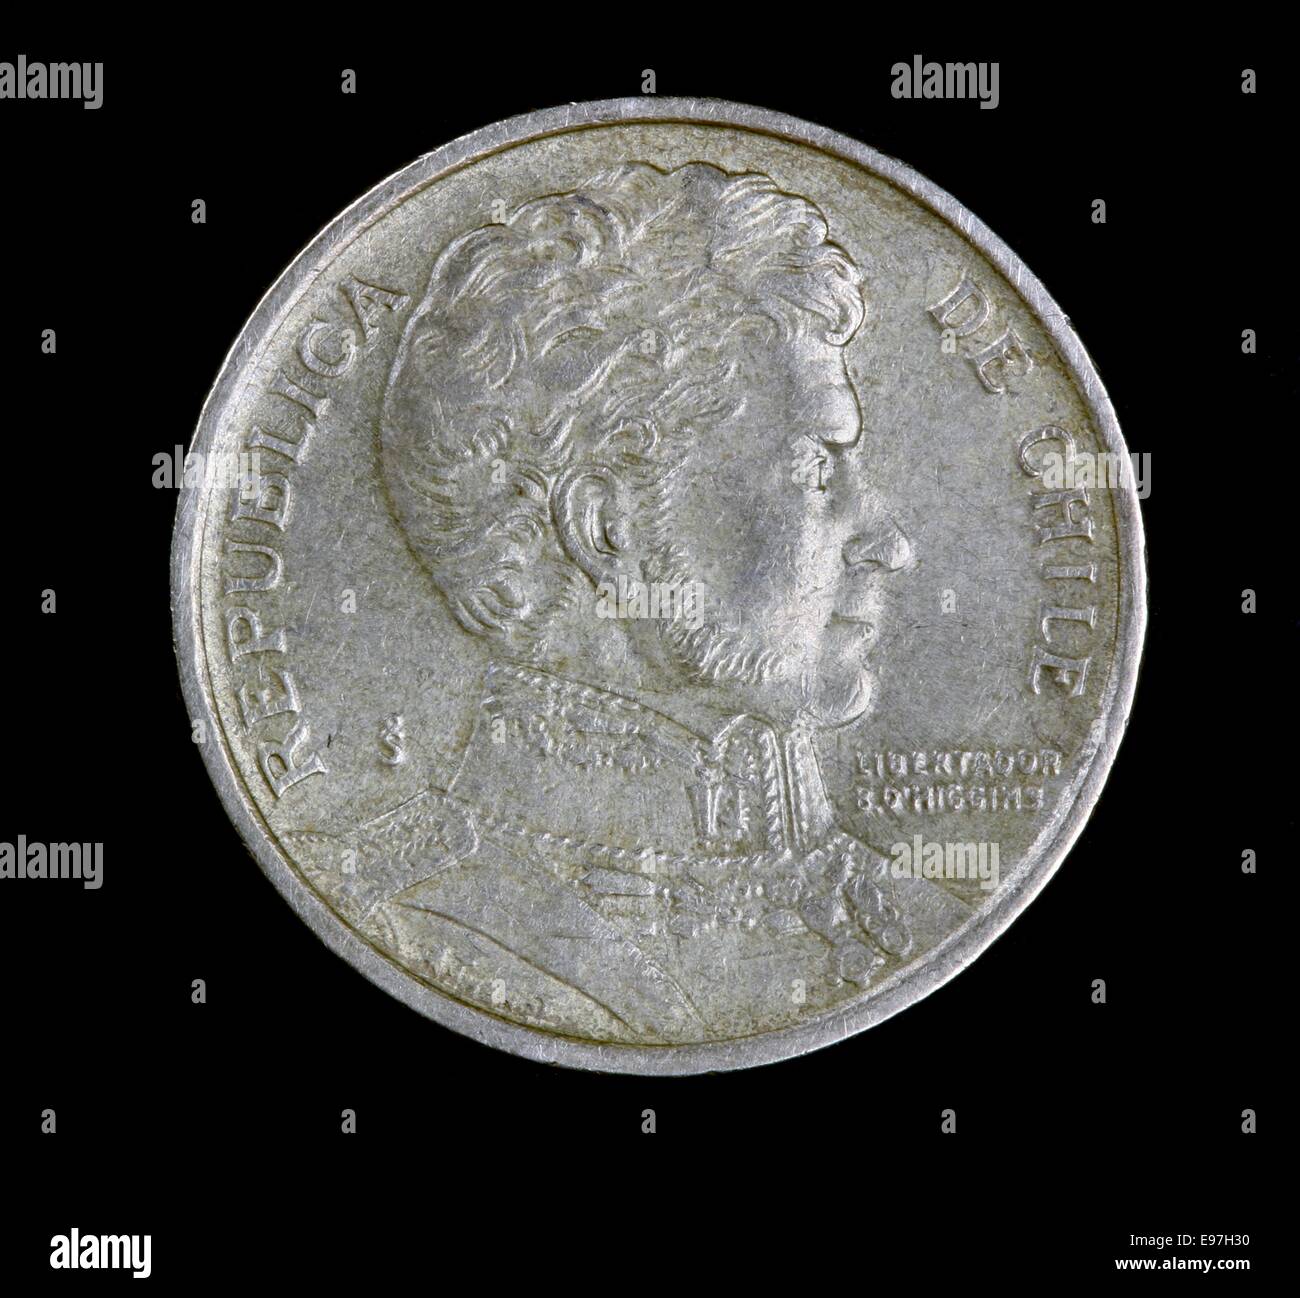 Vorderseite einer chilenischen 10 Pesos Münze, Bernardo O'Higgins Darstellung Stockfoto